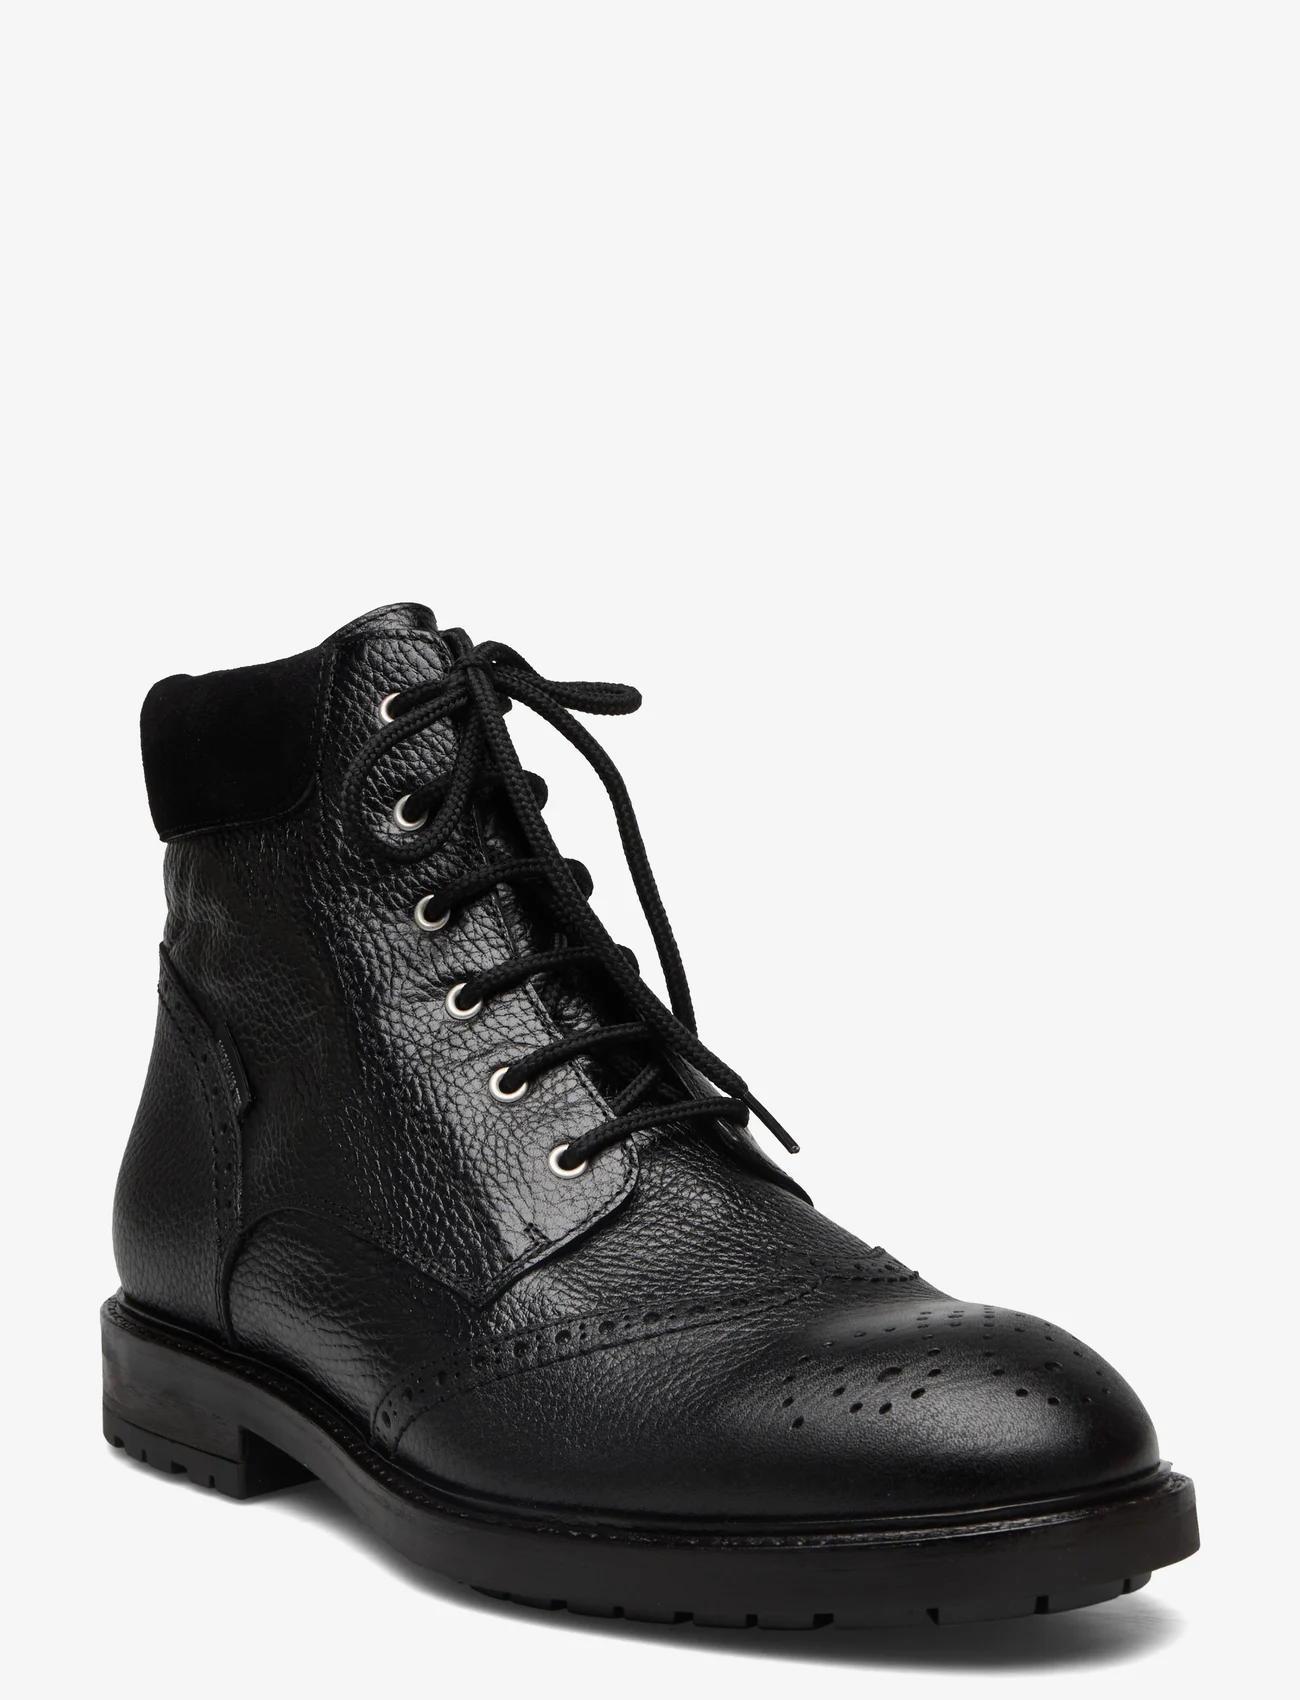 ANGULUS - Shoes - flat - with lace - sznurowane - 2504/1163 black/black - 0